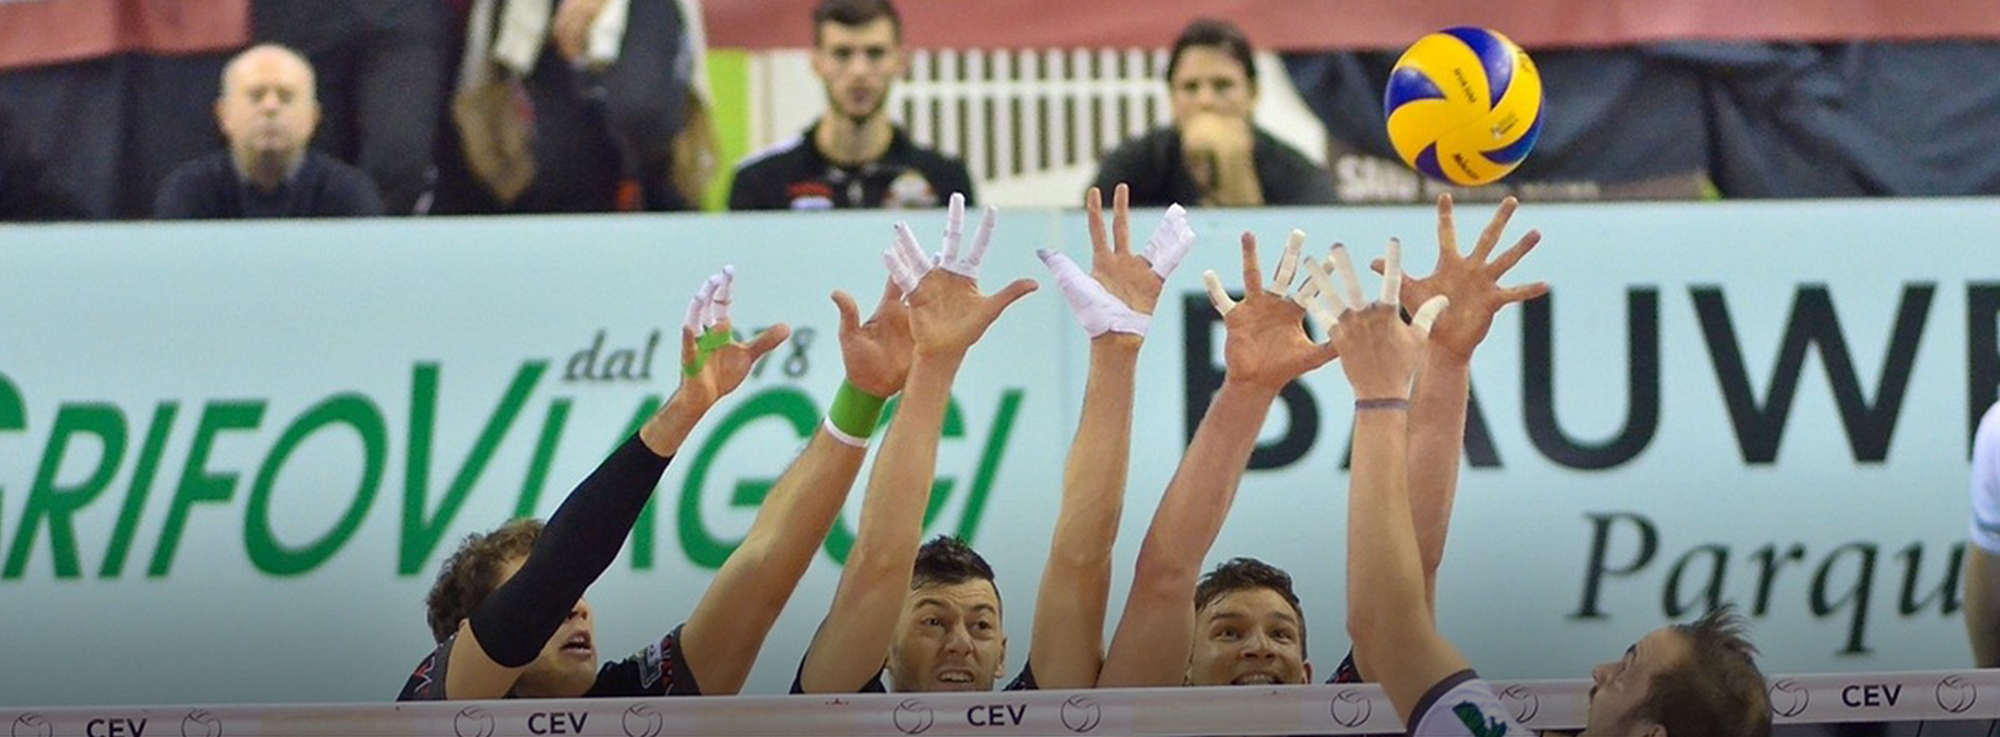 Bari: Campionato del Mondo di Pallavolo - Pool C